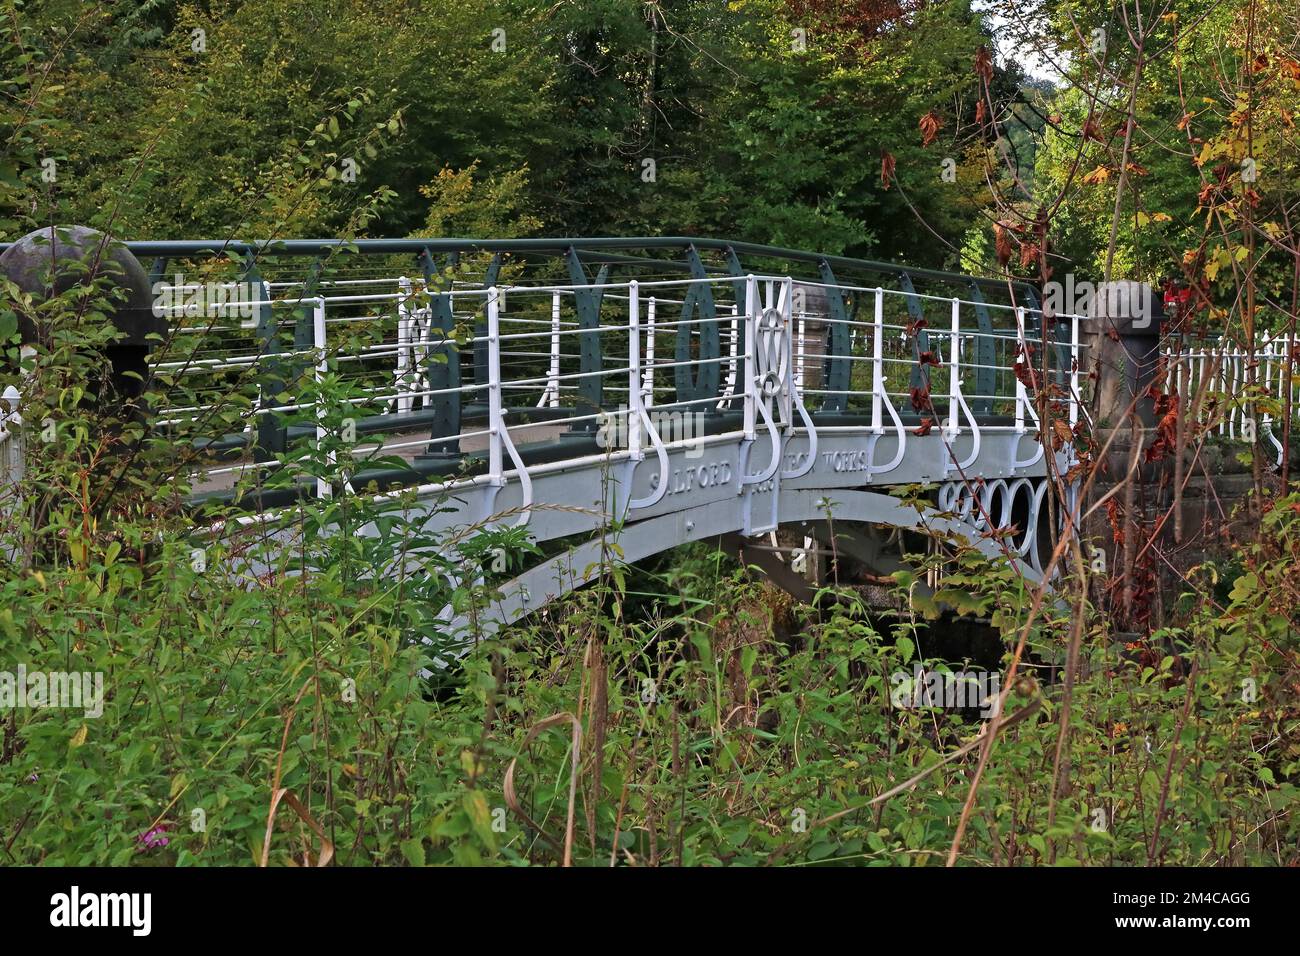 Pont de fer 1813, traversée de la rivière Goyt, dans le parc de Brabyns, Marple, Stockport, Cheshire, Angleterre, Royaume-Uni, SK6 5DT Banque D'Images